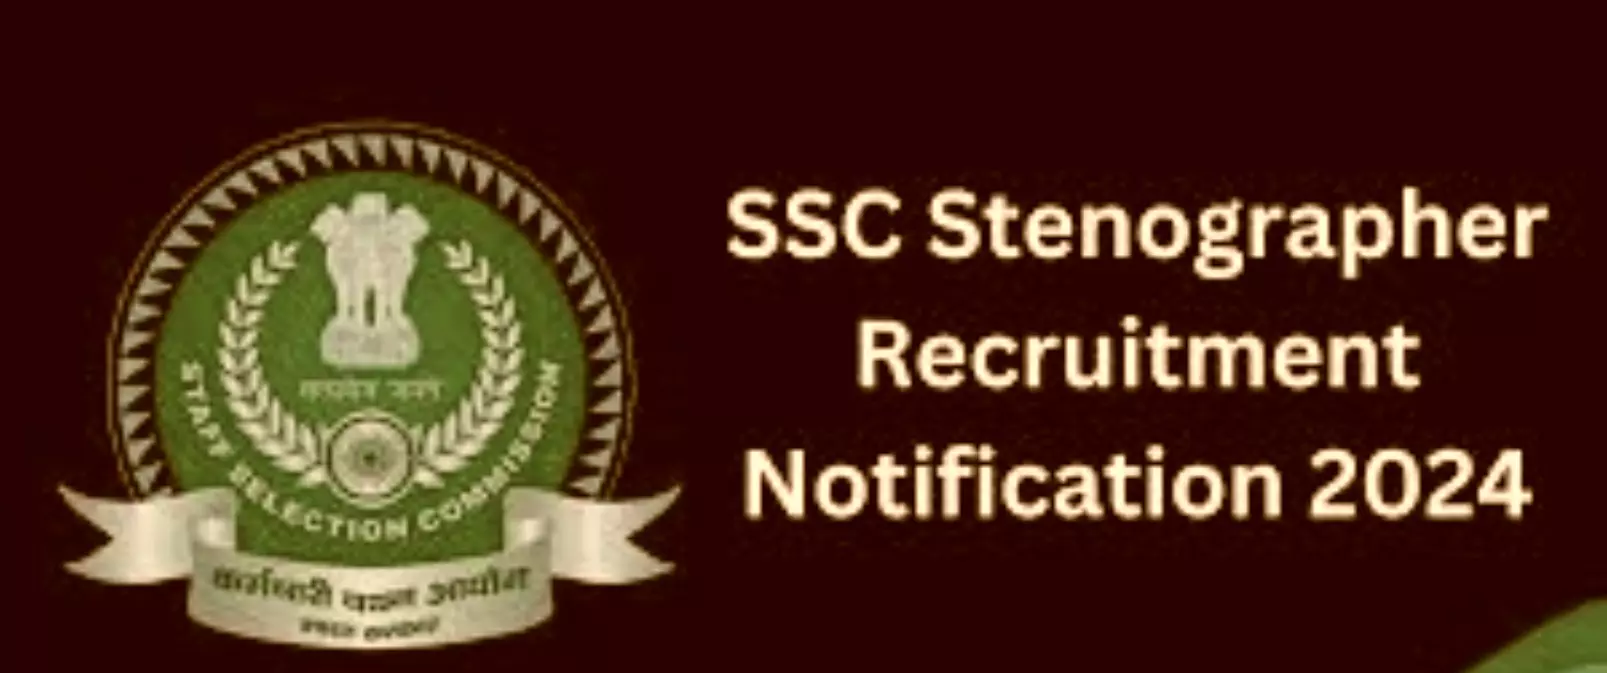 SSC stenographer: स्टेनोग्राफर भर्ती के लिए शुरू हुए आवेदन, जानें क्या है परीक्षा पैटर्न